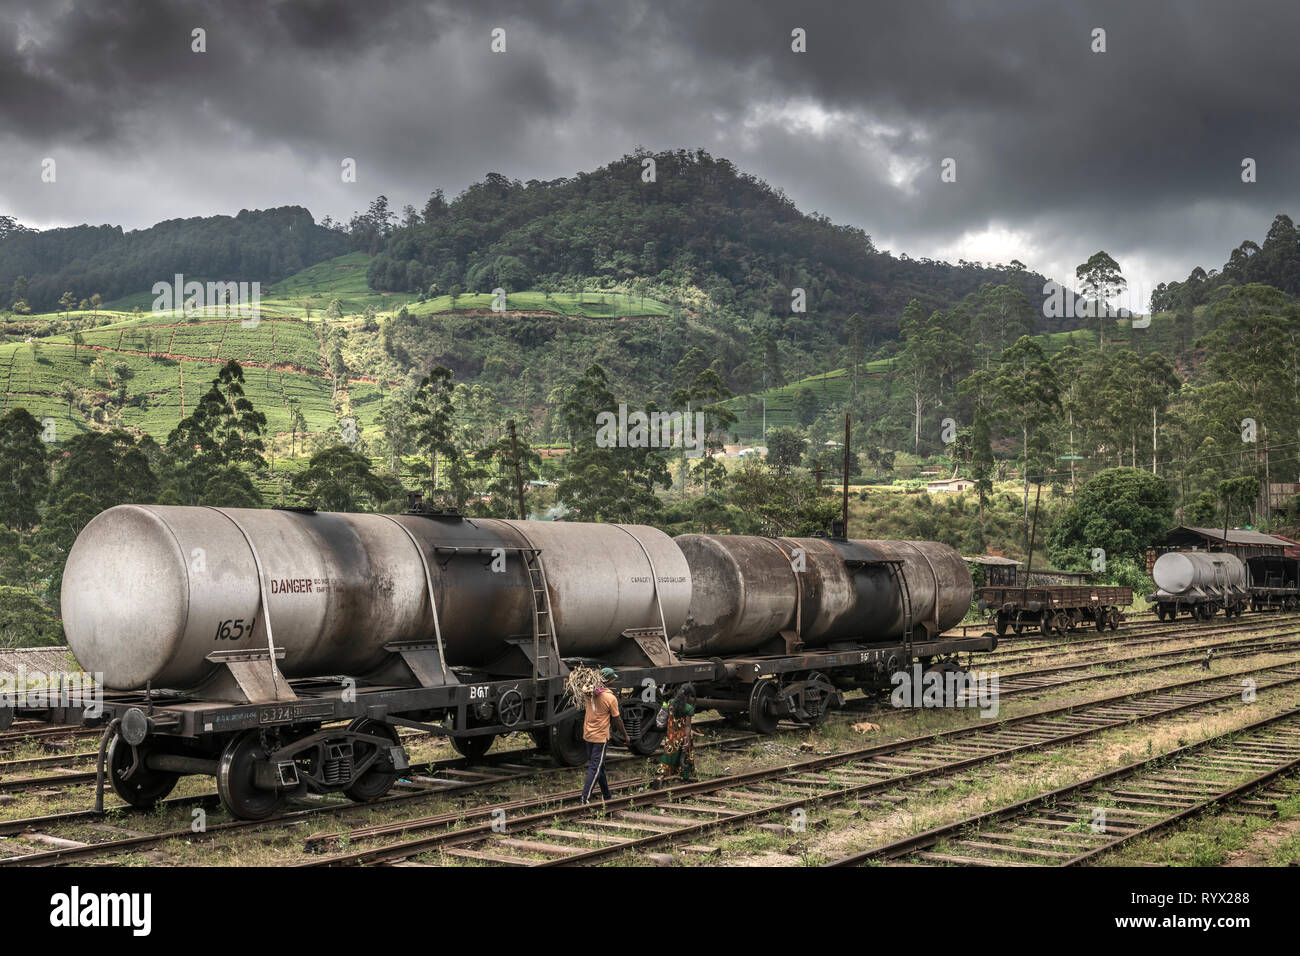 Un par de caminar a lo largo de las pistas de la estación, como tormenta Nanu-Oya c;louds reunir sobre las colinas en la Provincia Central de Sri Lanka, utilizando el ferrocarril lin Foto de stock